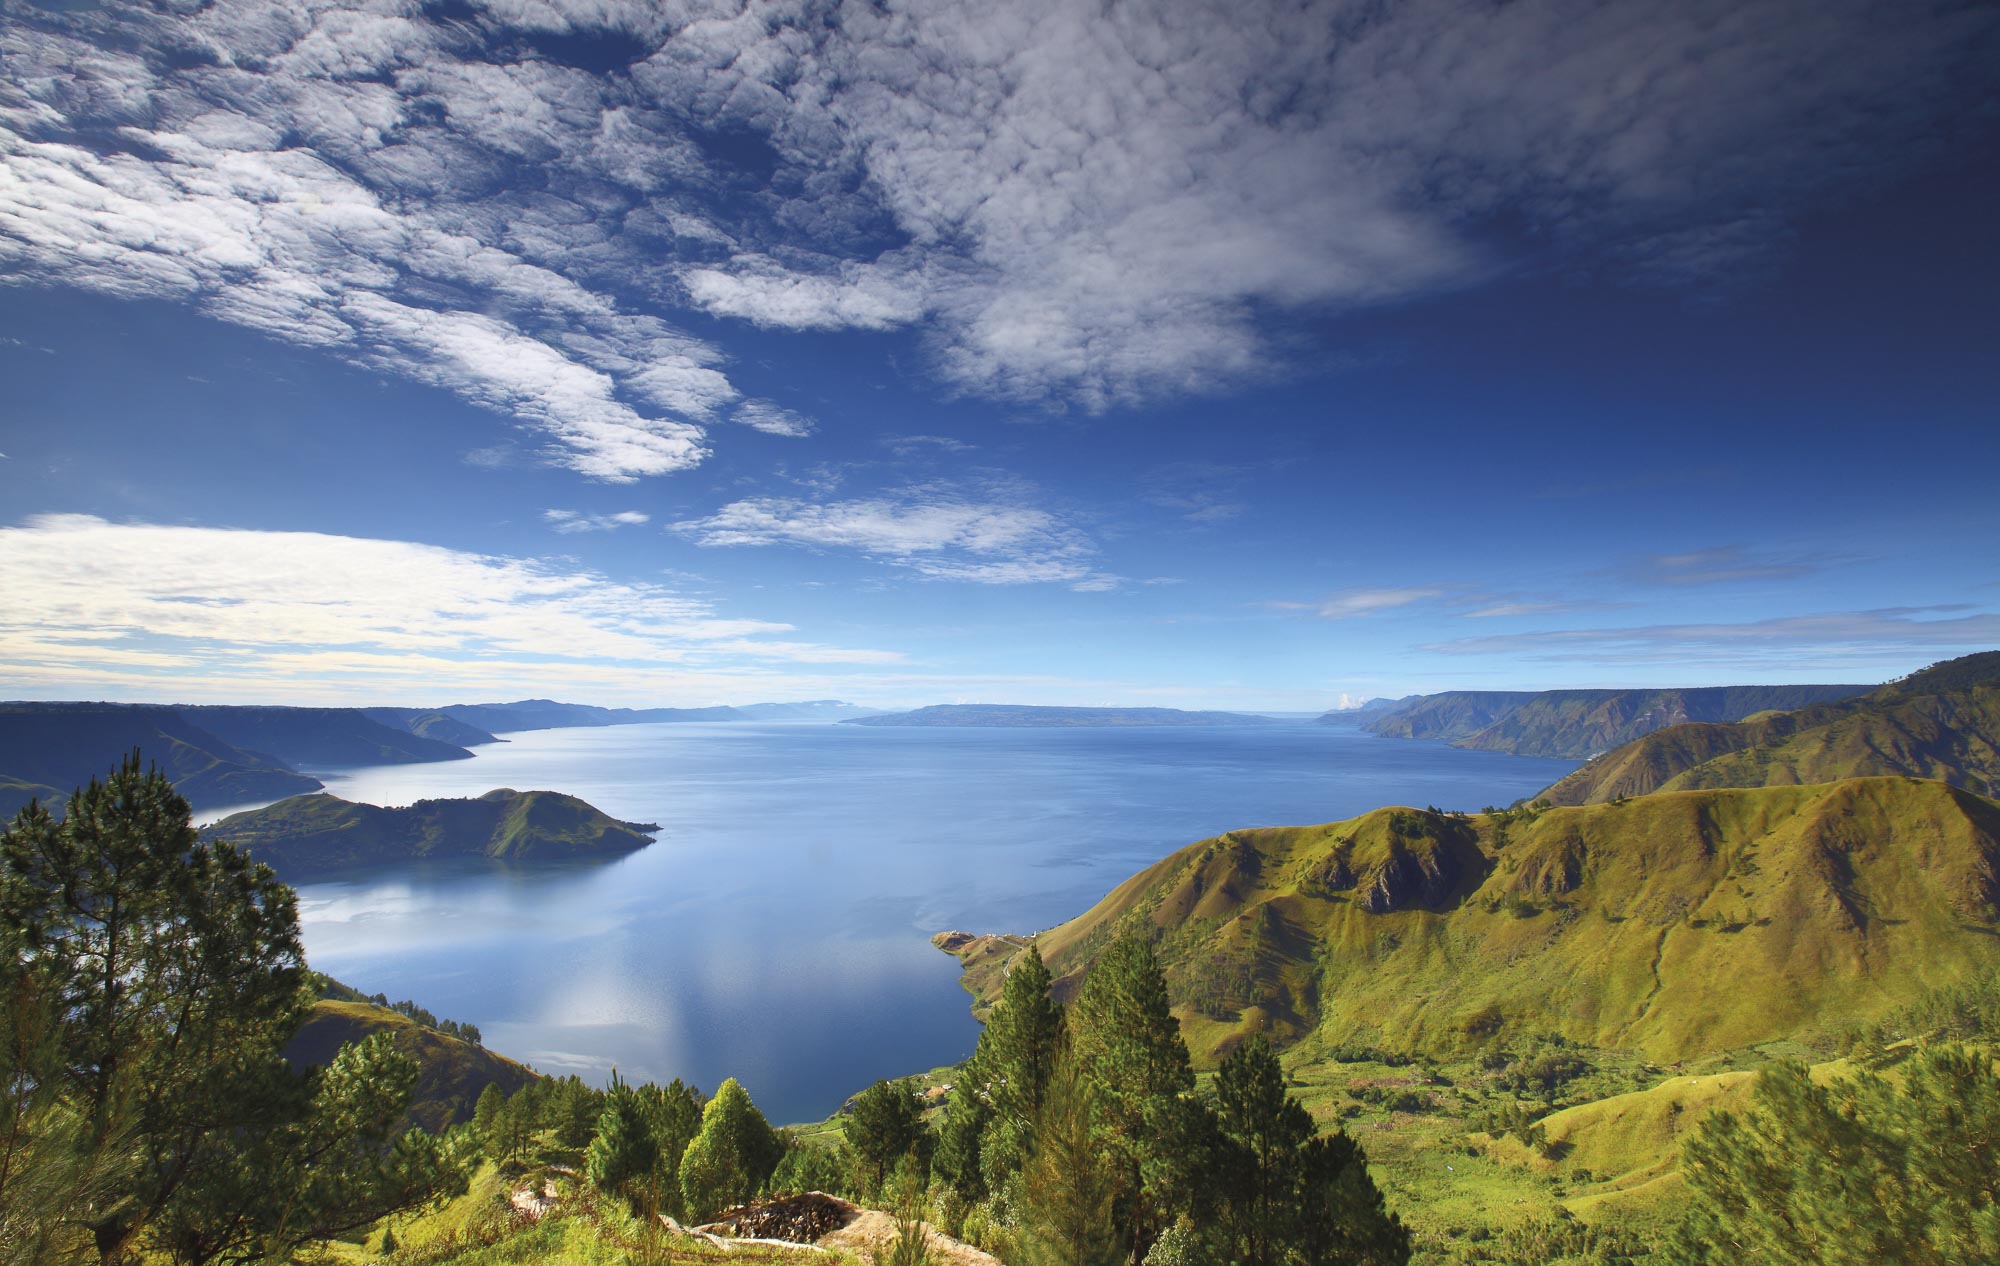 Lake Toba, Sumatra